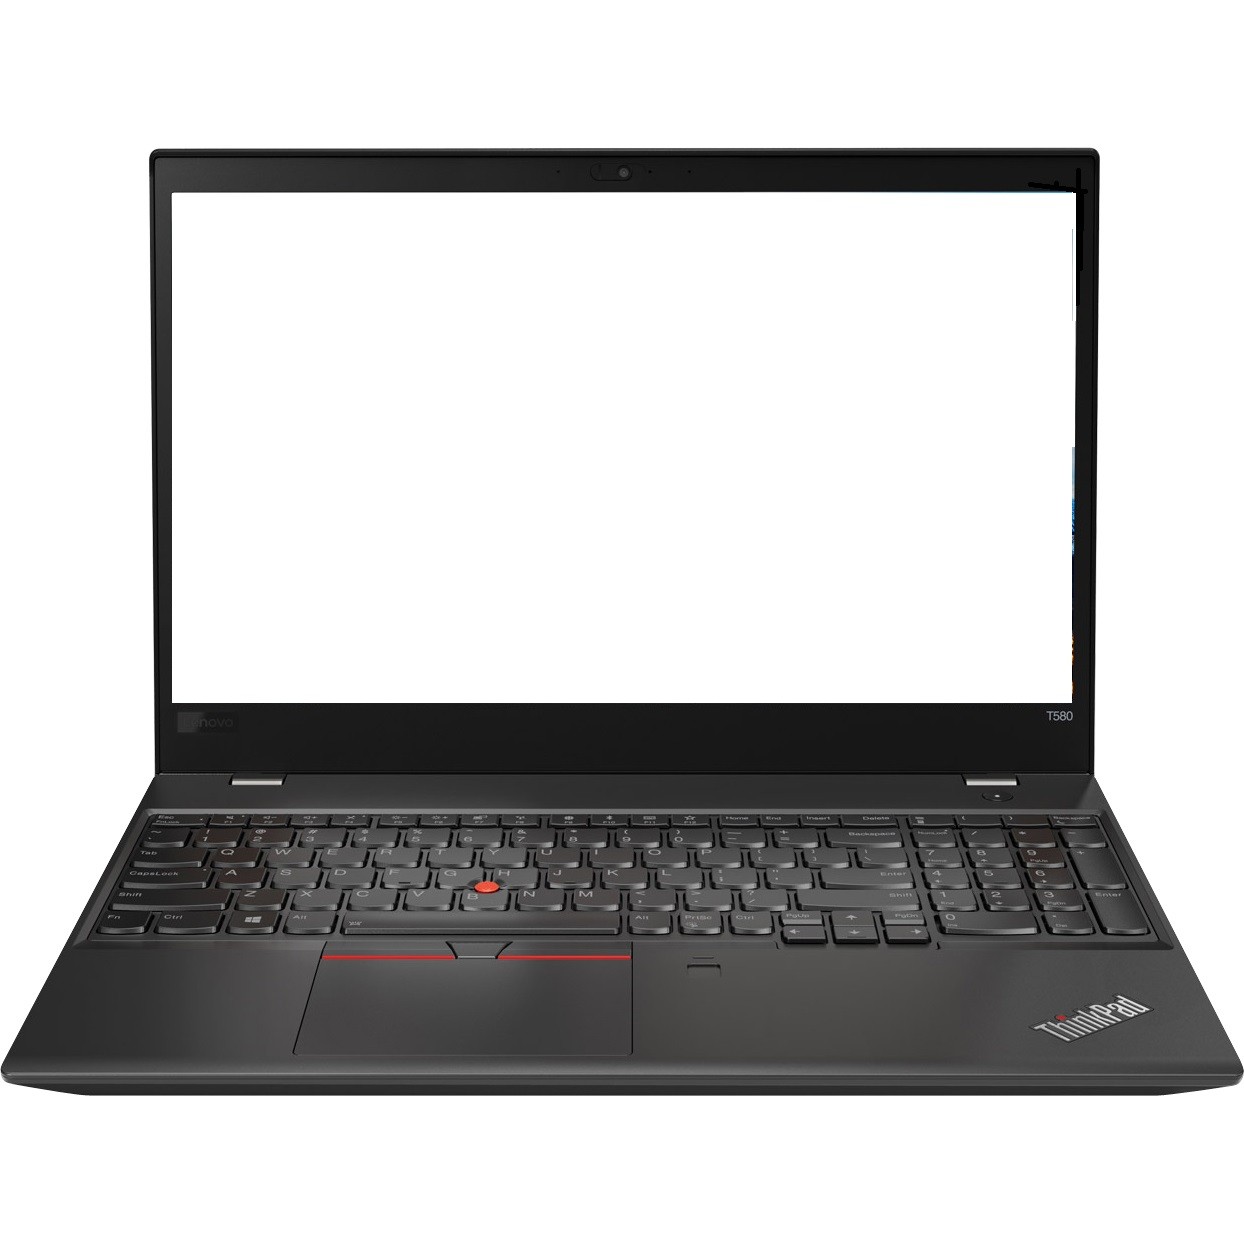 Lenovo ThinkPad T580 15.6" FHD i5-8250U 1.3GHz 8GB 512GB SSD W10P Laptop R